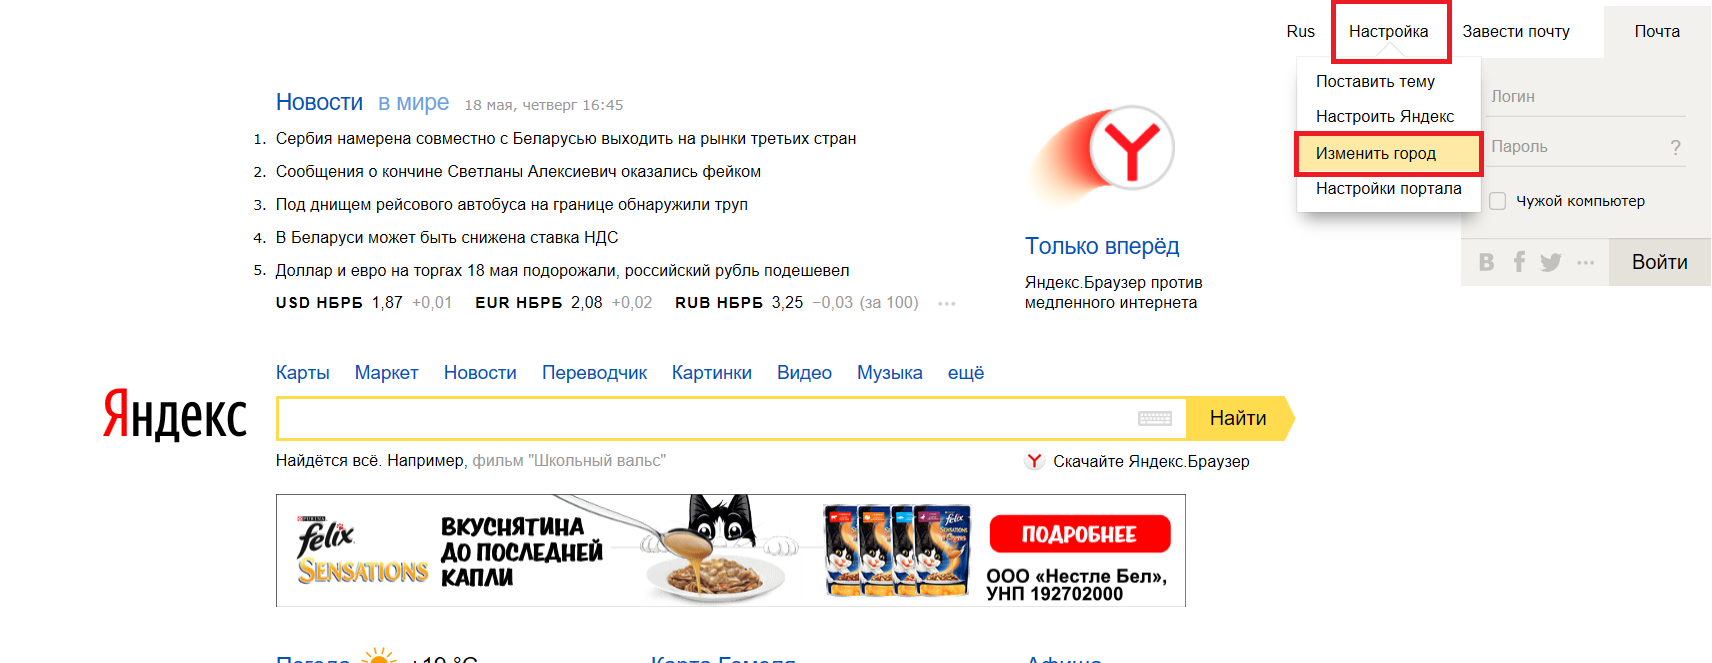 Как сделать новости на главной странице яндекса. Как поменять город в Яндексе. Изменить город в Яндексе. Изменить город на стартовой странице Яндекса.